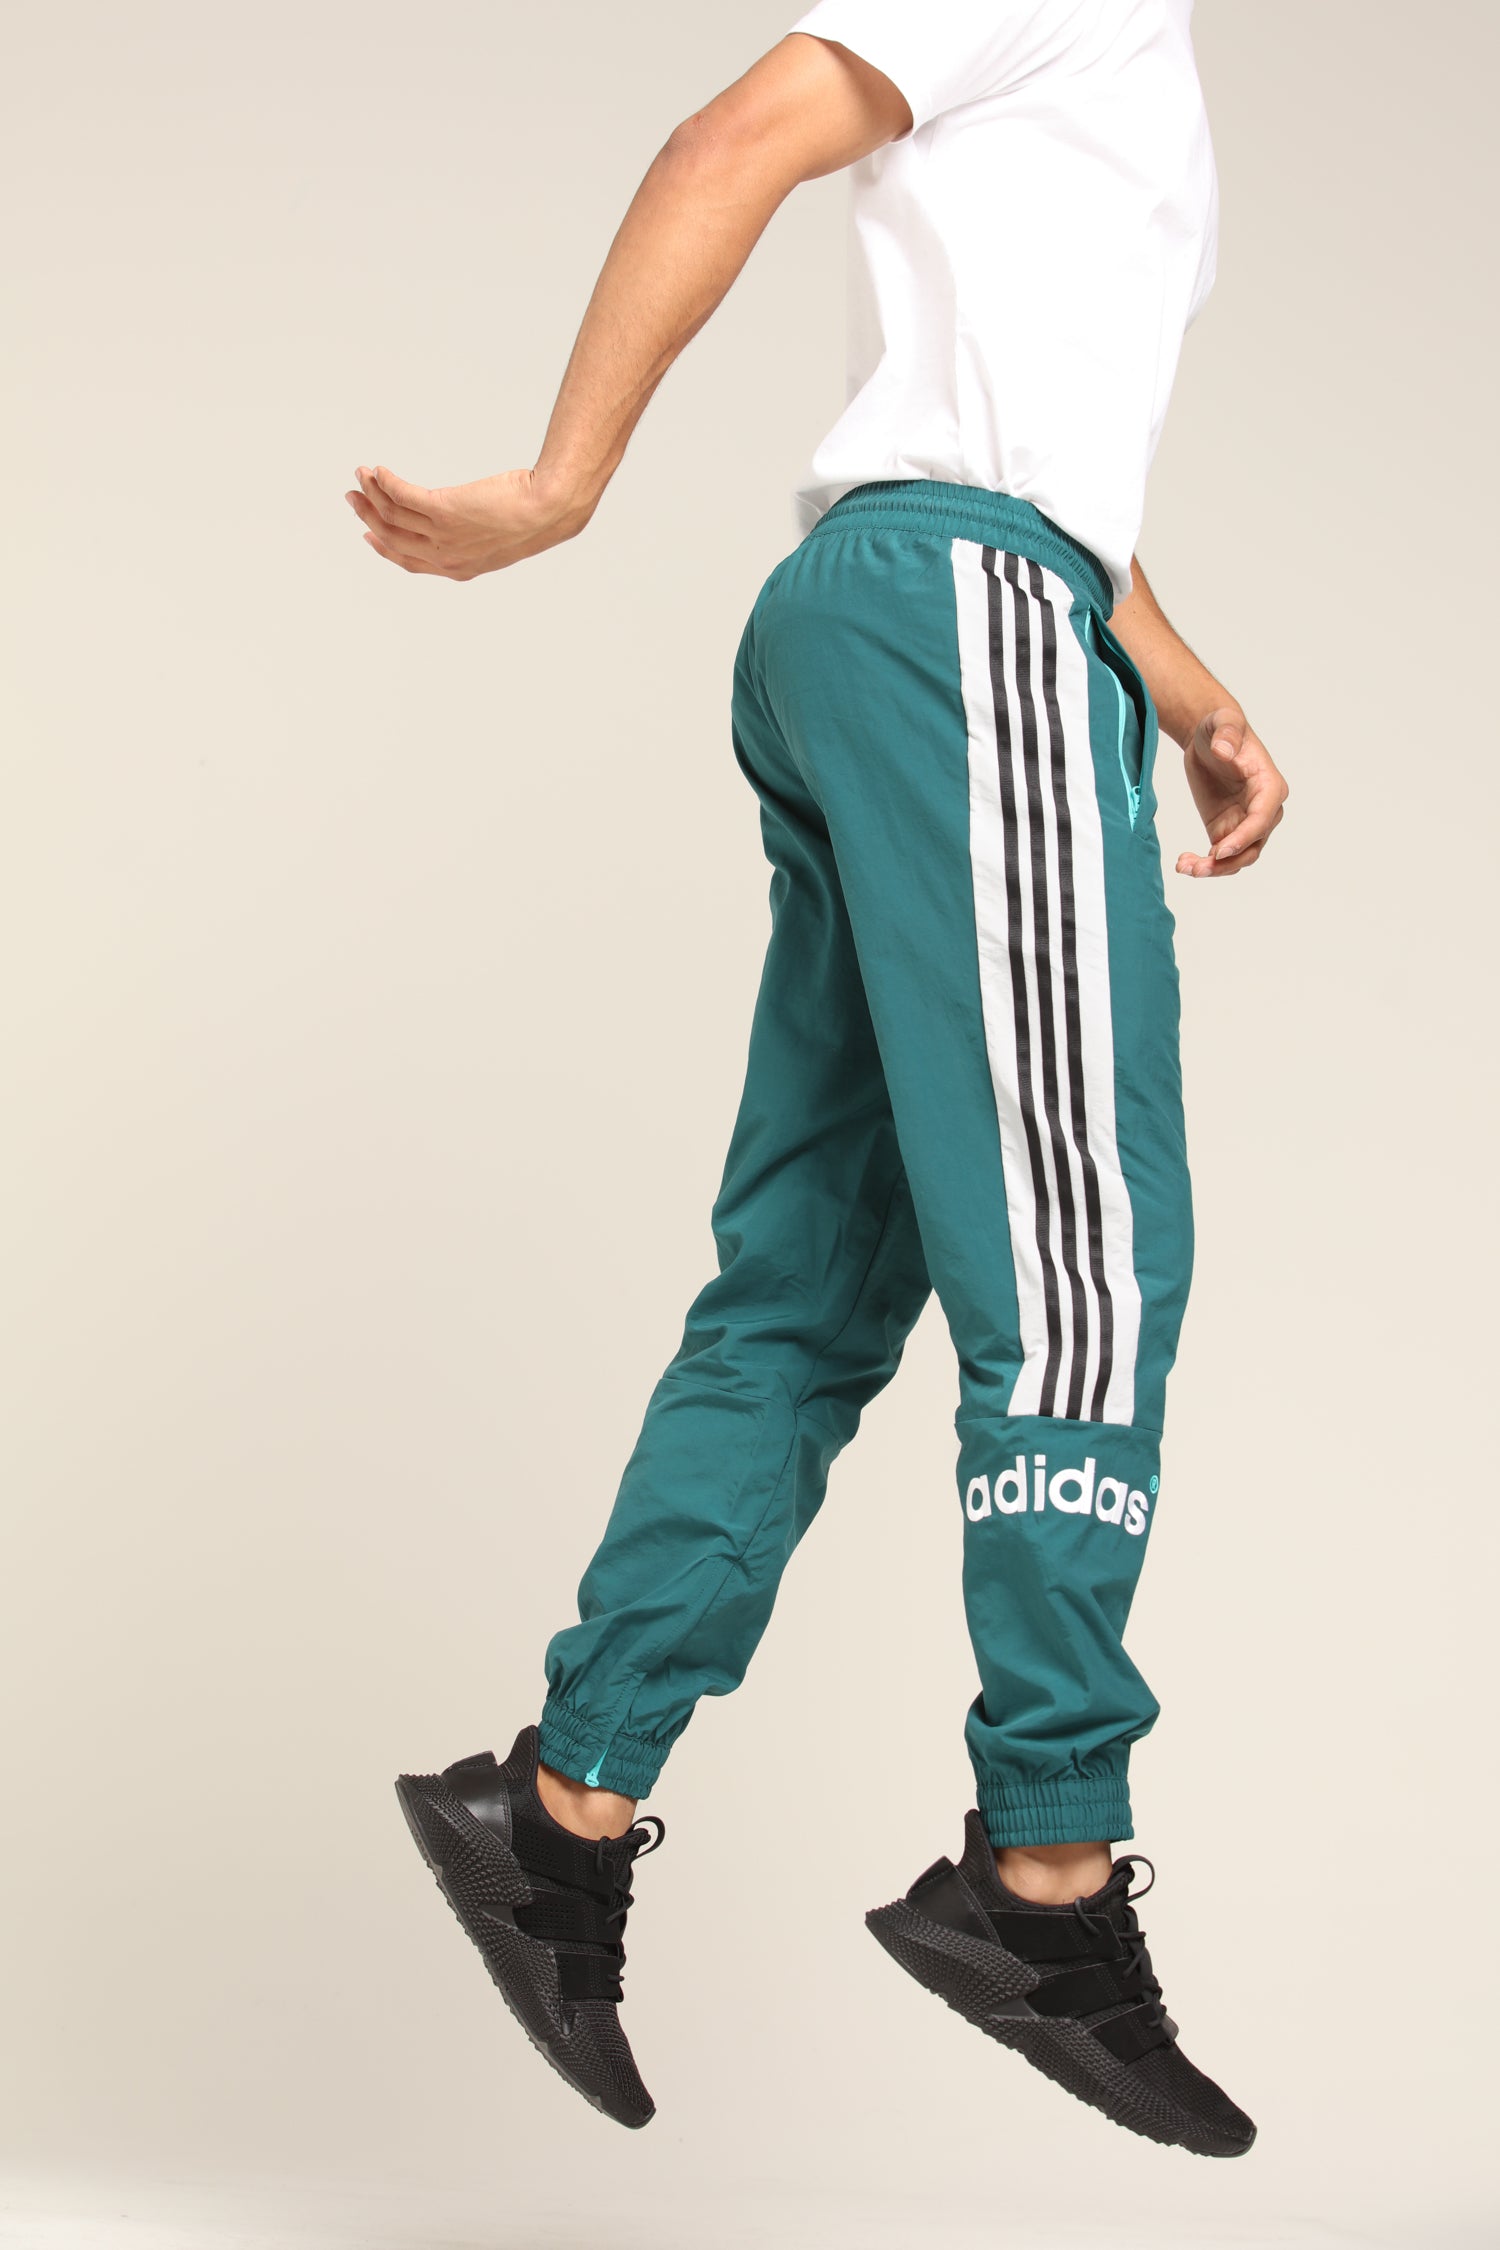 training suit GP138 80s tracksuit trouser pants Salad green workout pants jogging pants 90s windbreaker pants MS yoga pants